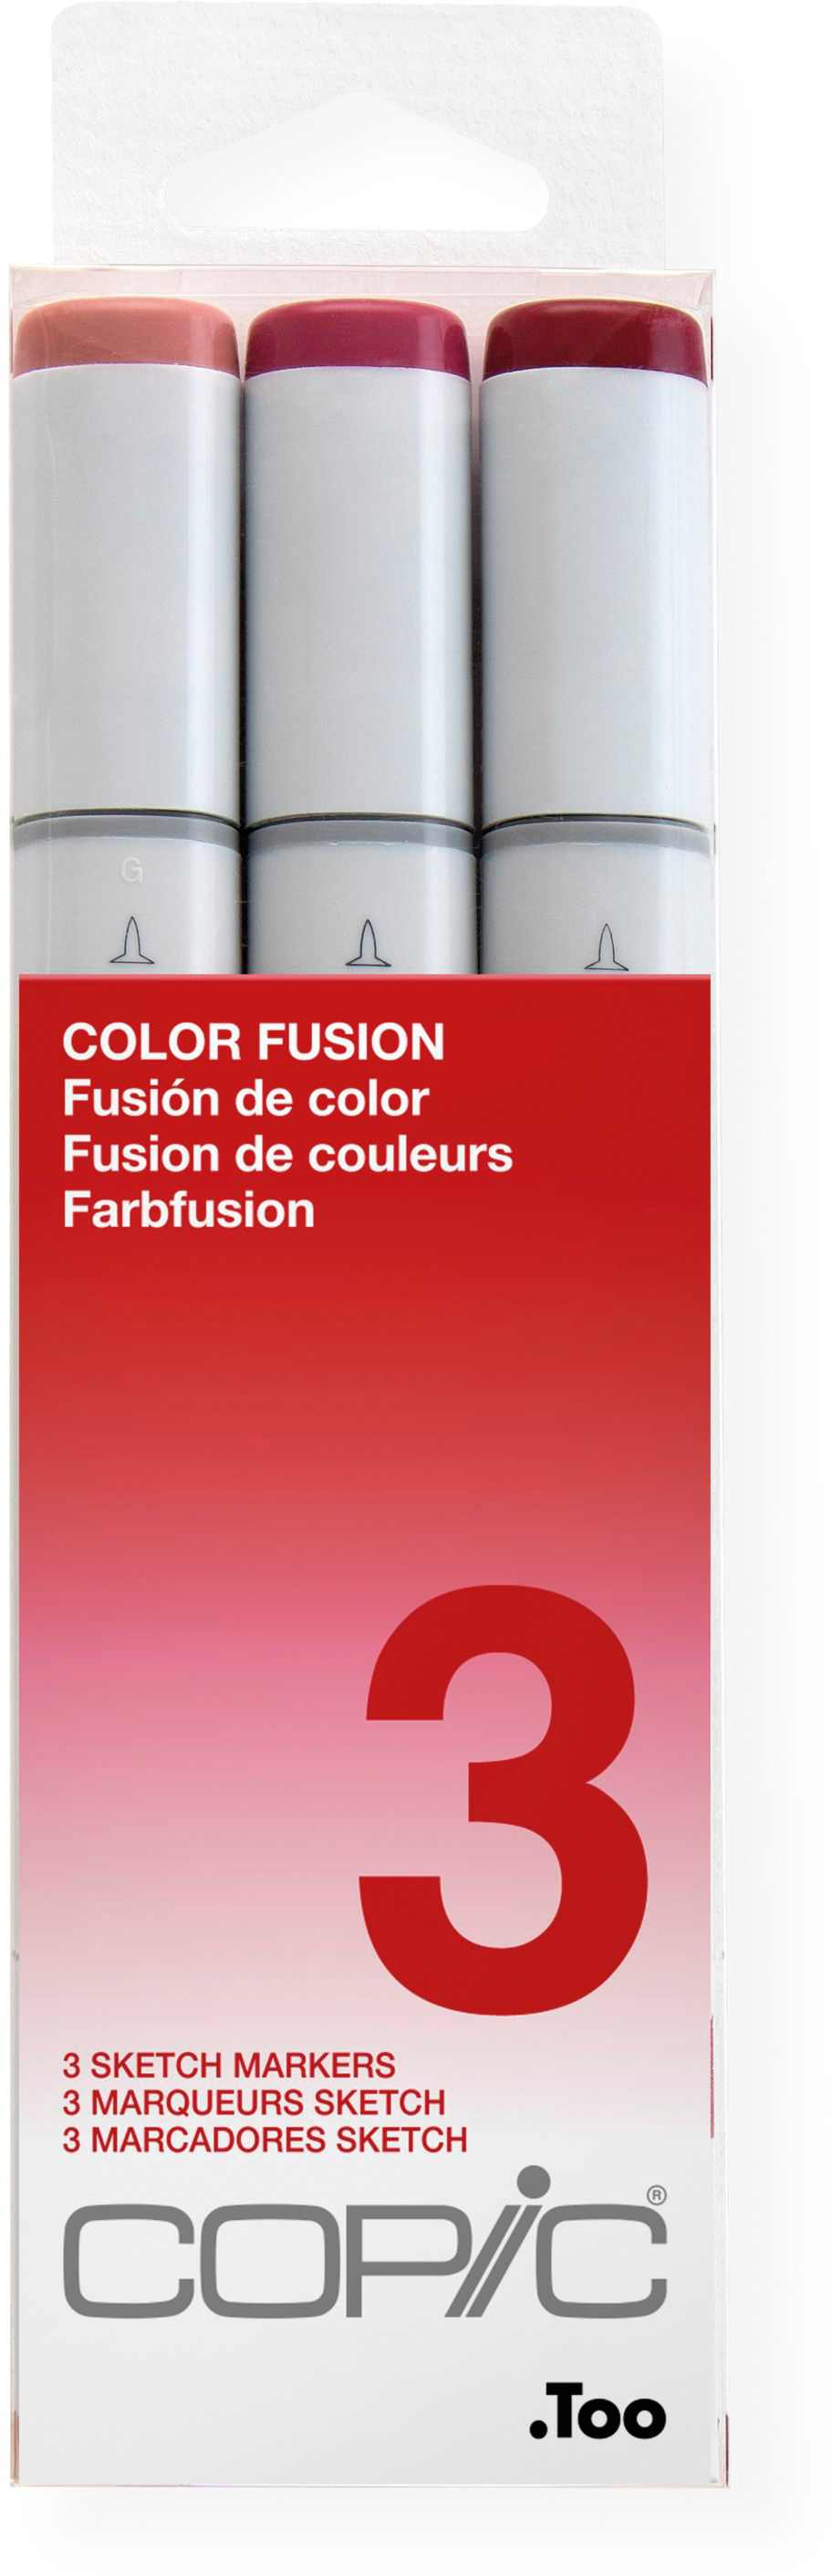 COPIC Marker Sketch 21075653 Set Color Fusion 3, 3 pcs.